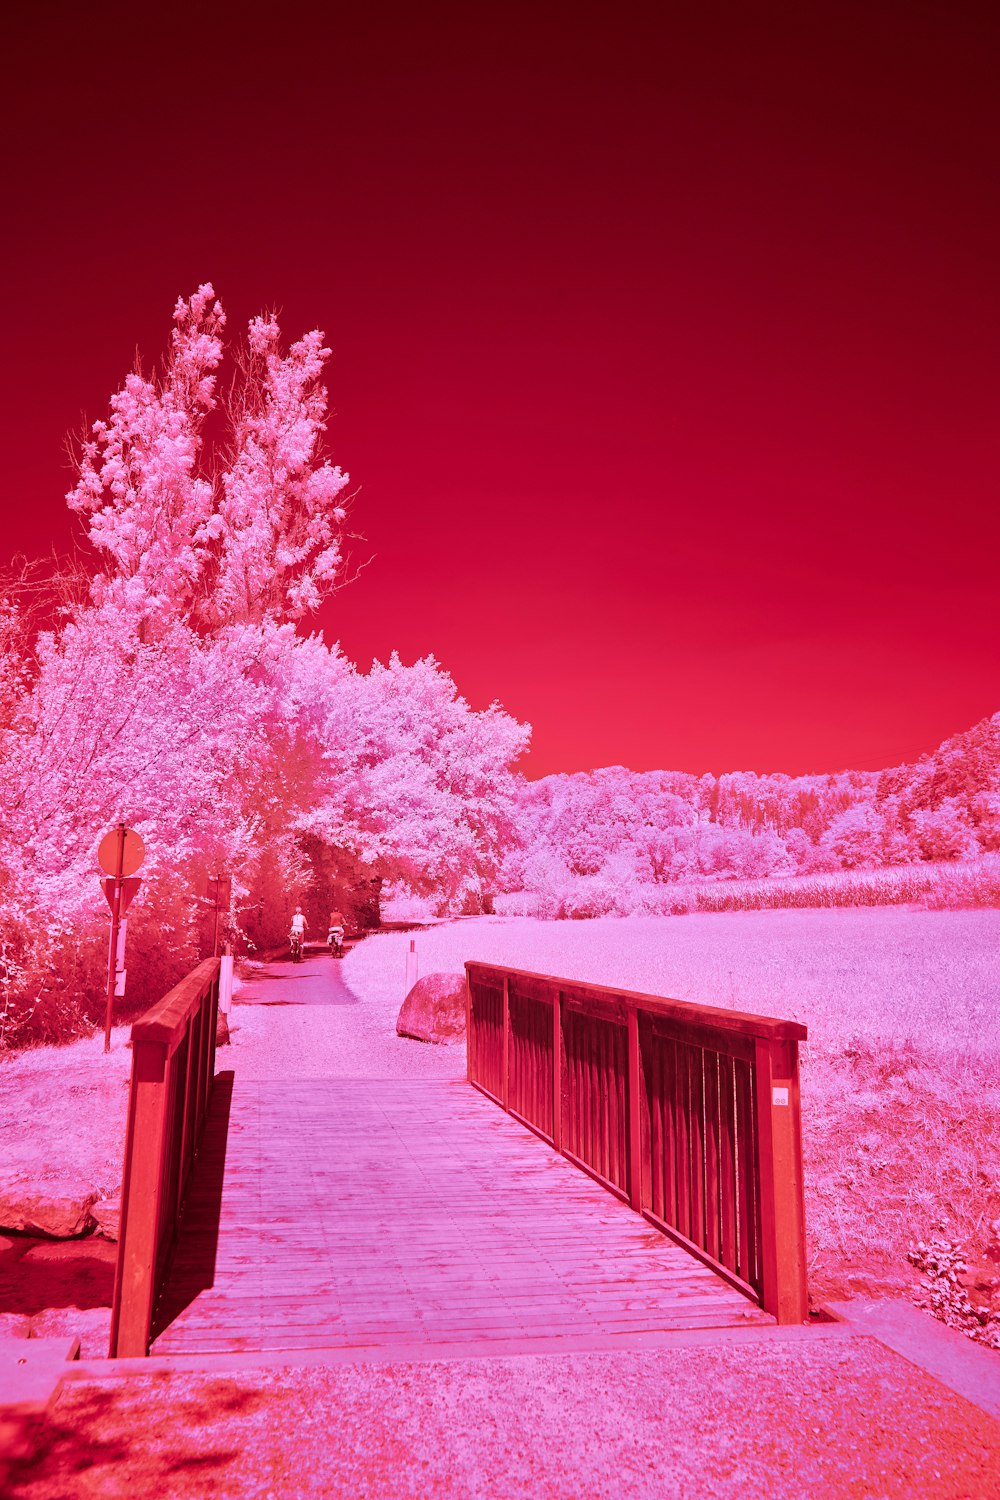 橋の赤とピンクの赤外線画像